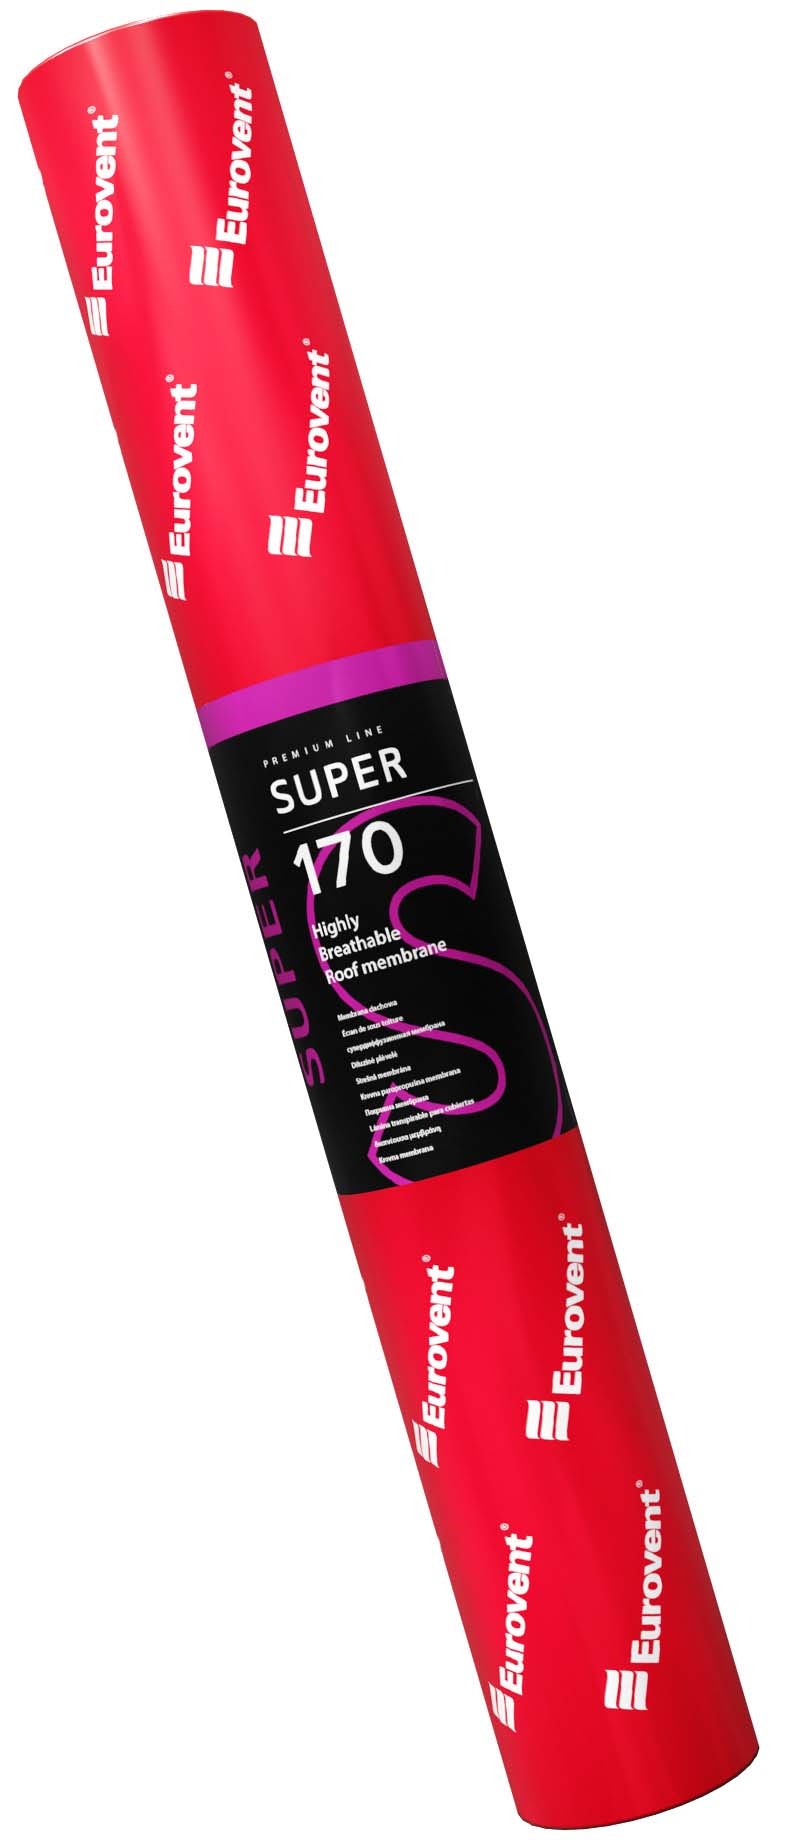 Rolka membrany SUPER owinięta w folie koloru czerwonego z etykietą firmy Eurovent